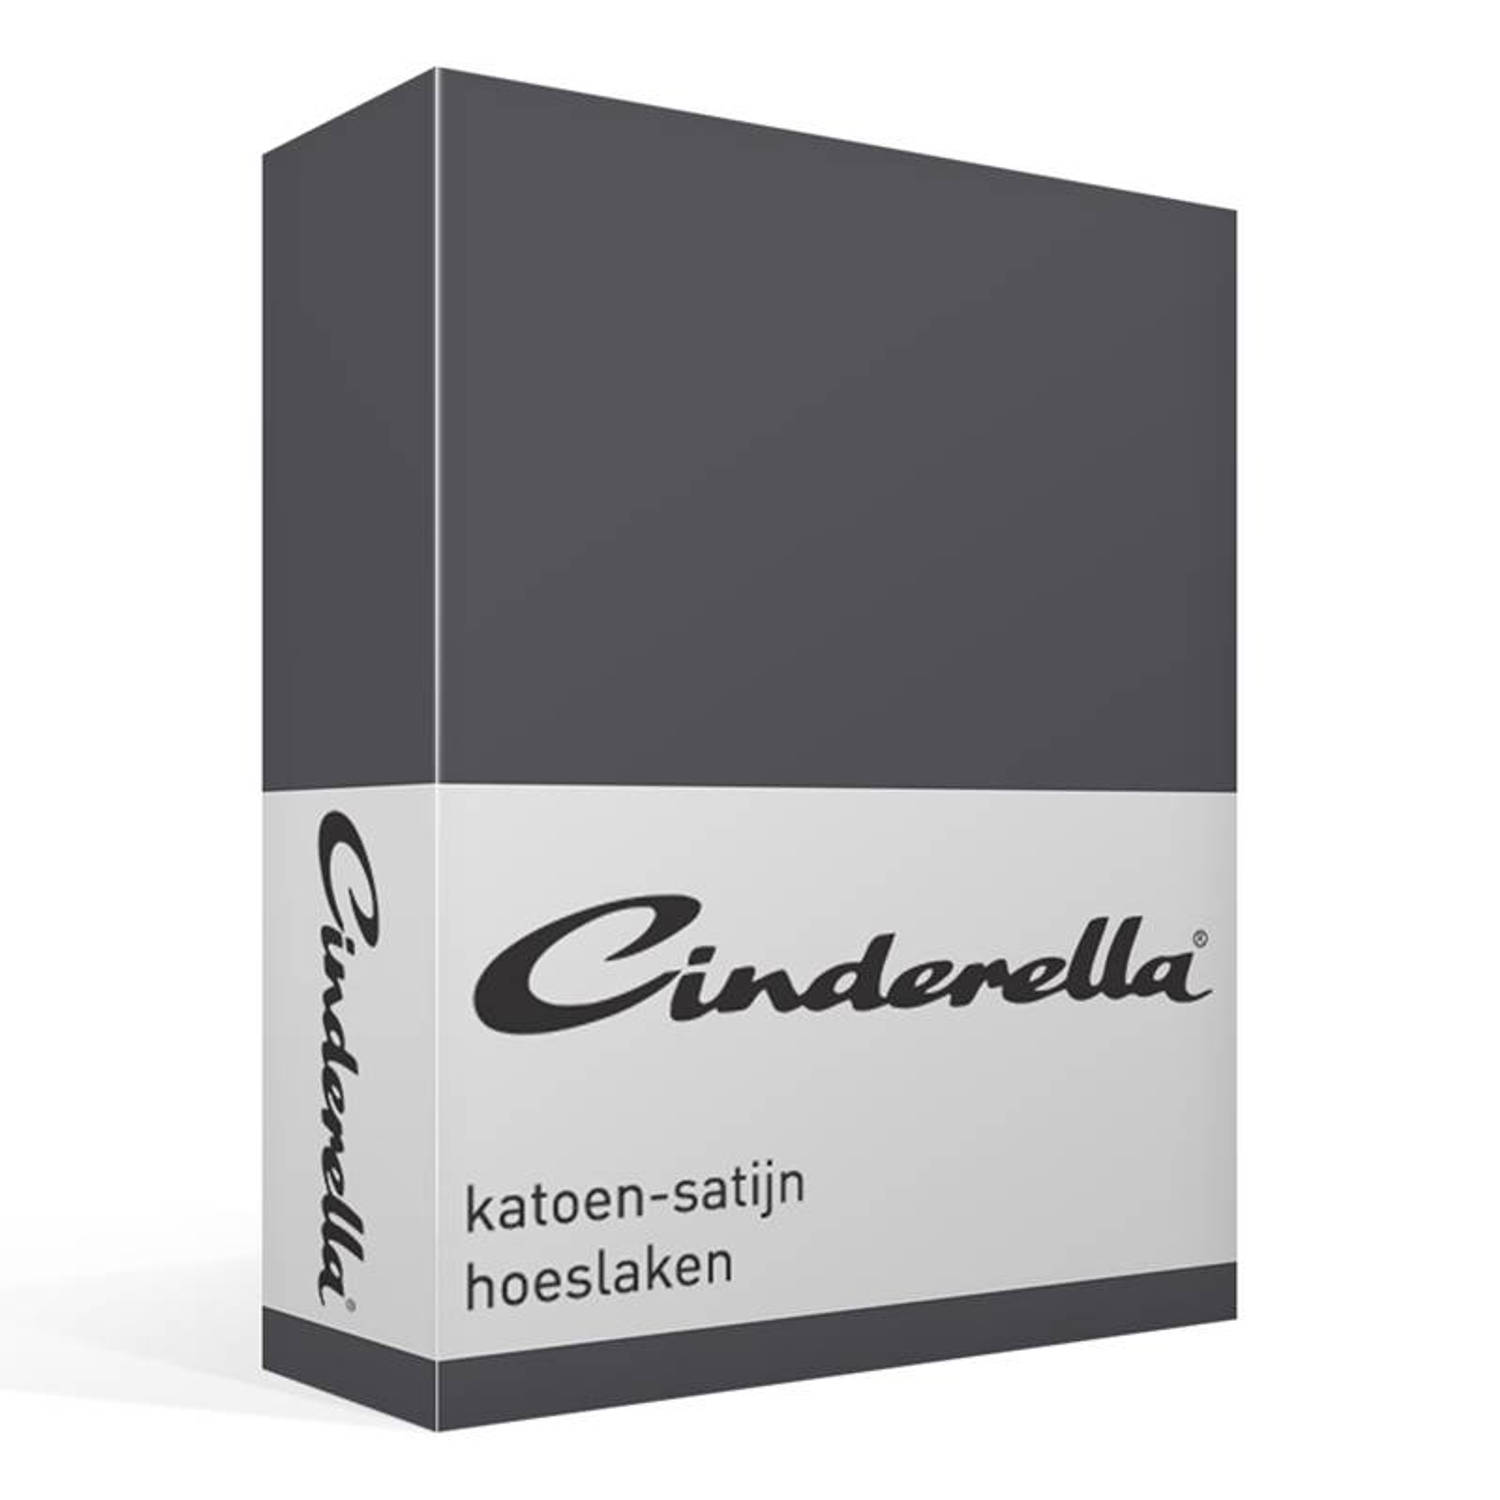 Cinderella katoen-satijn hoeslaken - 100% katoen-satijn - 2-persoons (140x210 cm) - Anthracite